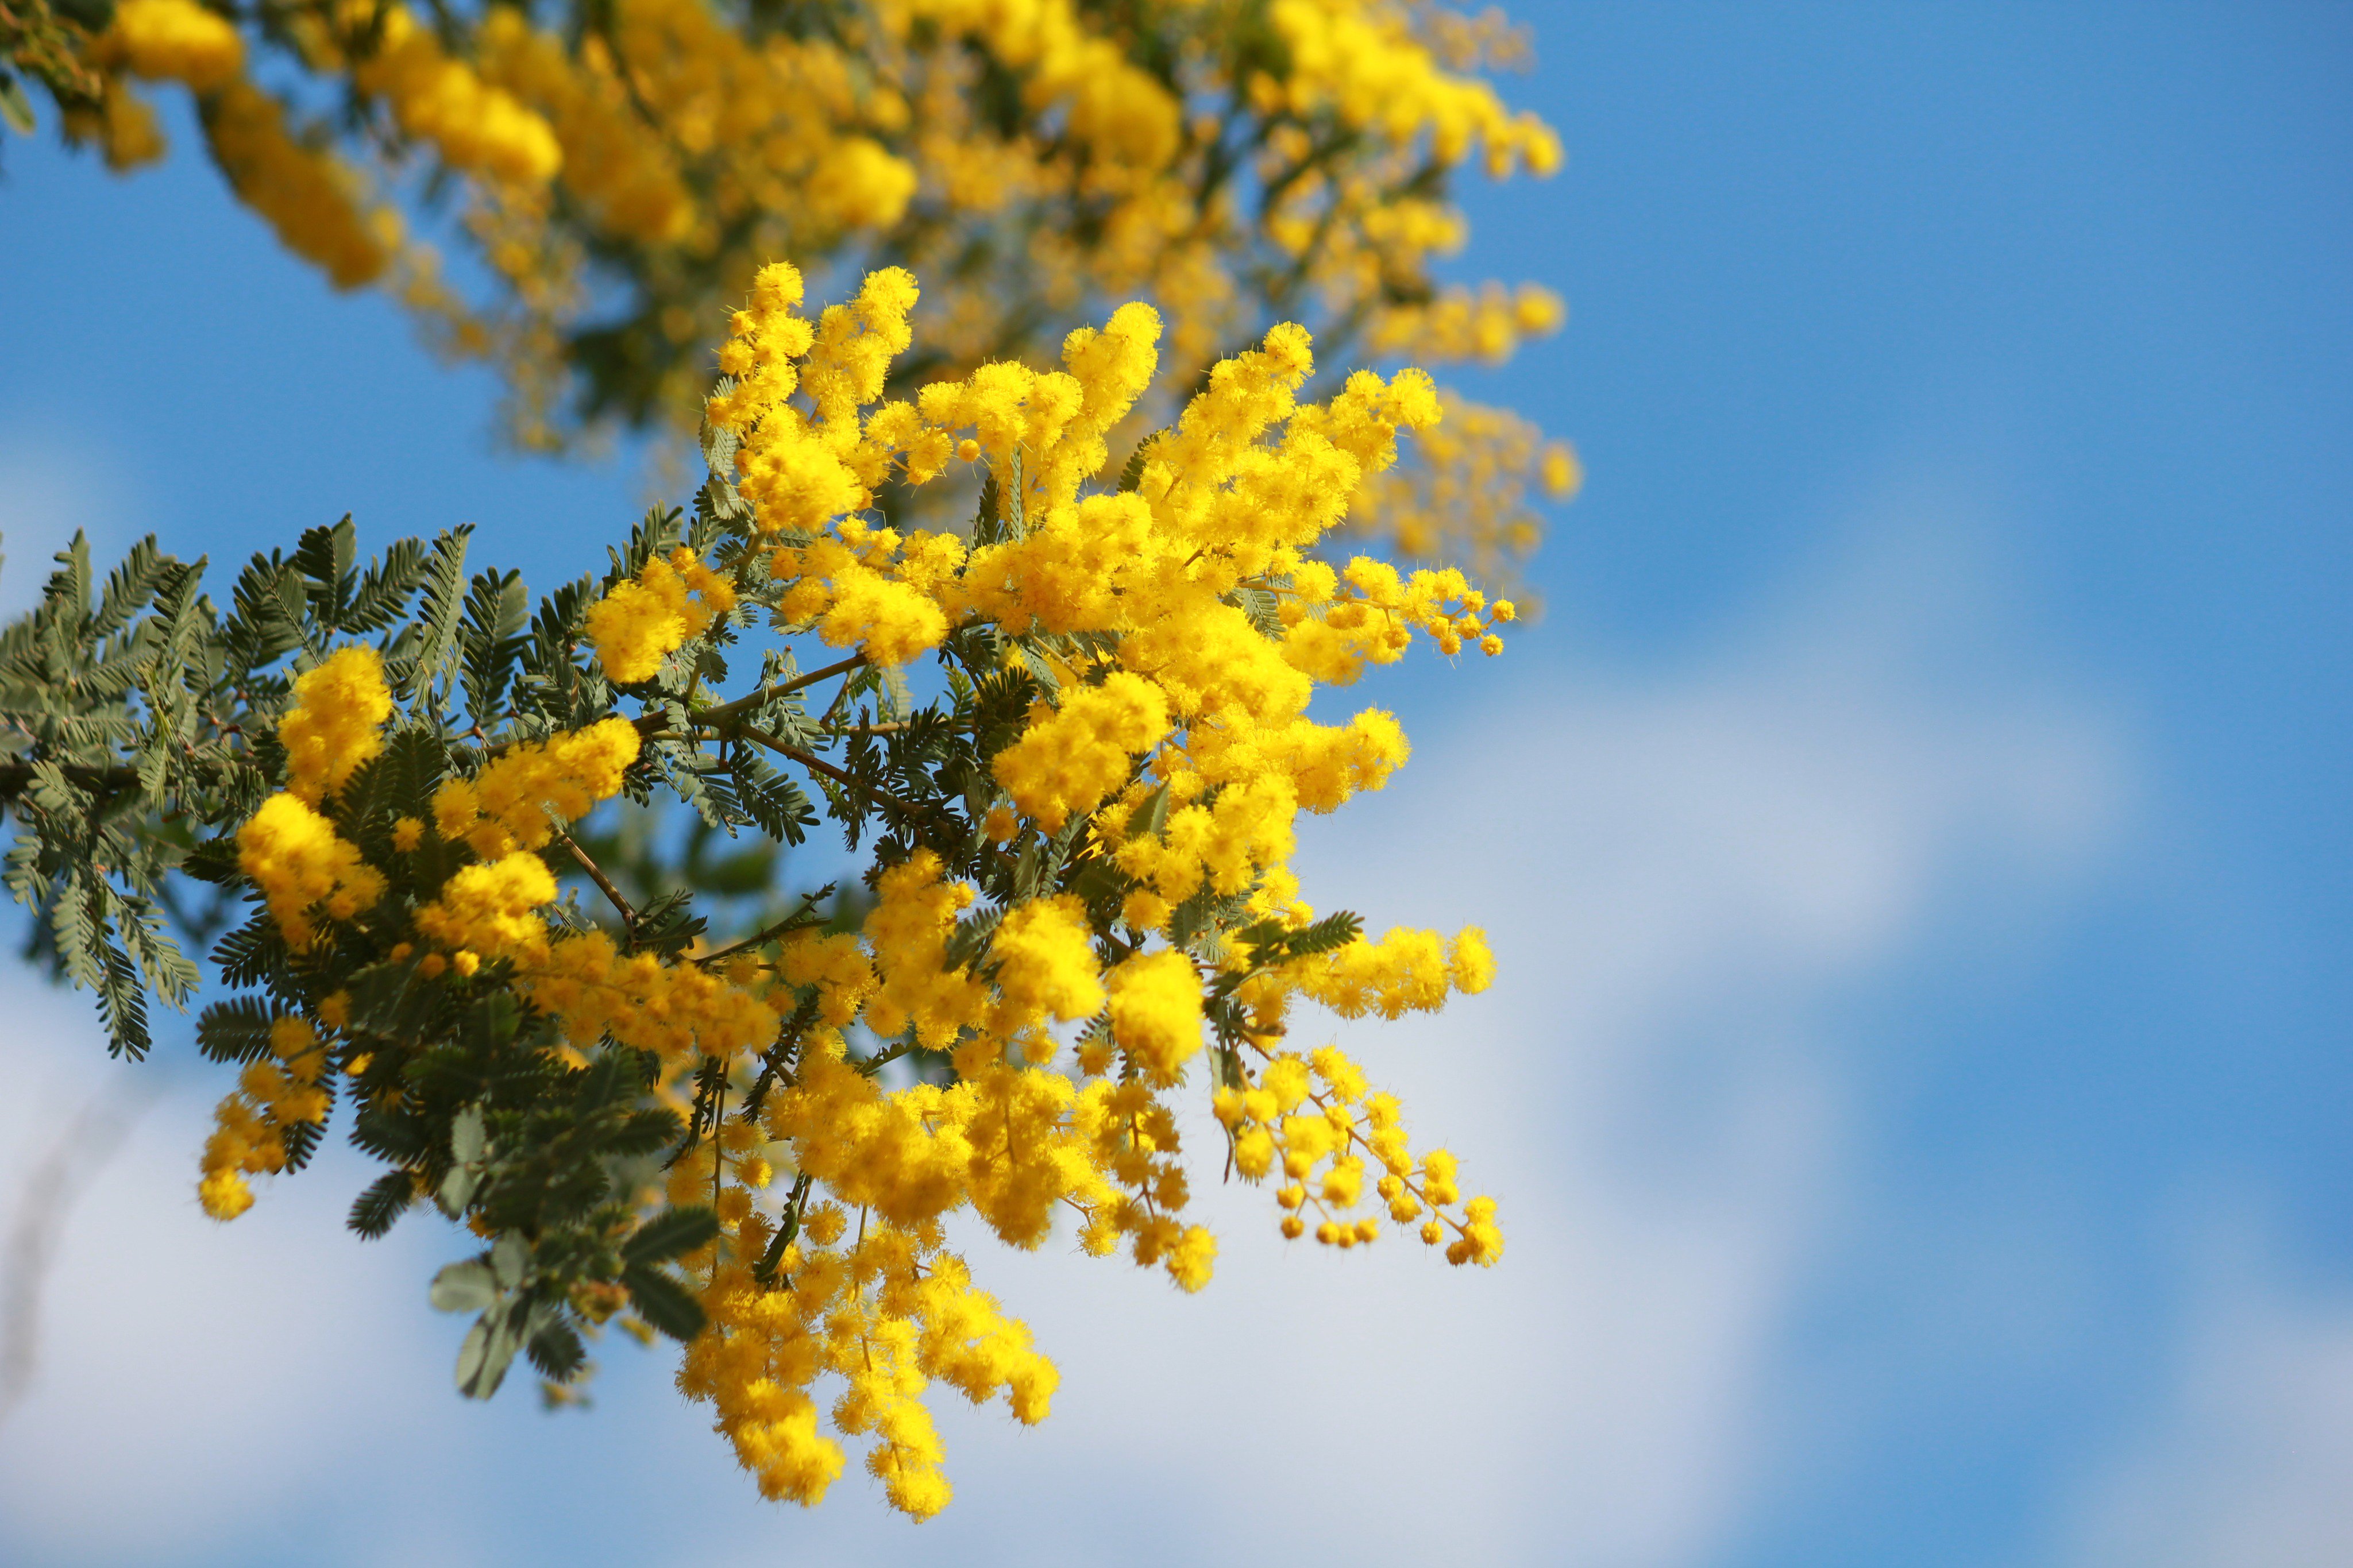 咲くやこの花館 メディタレニアンガーデンにてマメ科の ミモザ アカシア 別名 ギンヨウアカシア が開花しています 噴水のある場所が目印ですよ 青空と鮮やかな黄色のまるい花 がとっても可愛らしいですね 本日3 8は ミモザの日 とも呼ばれているそう